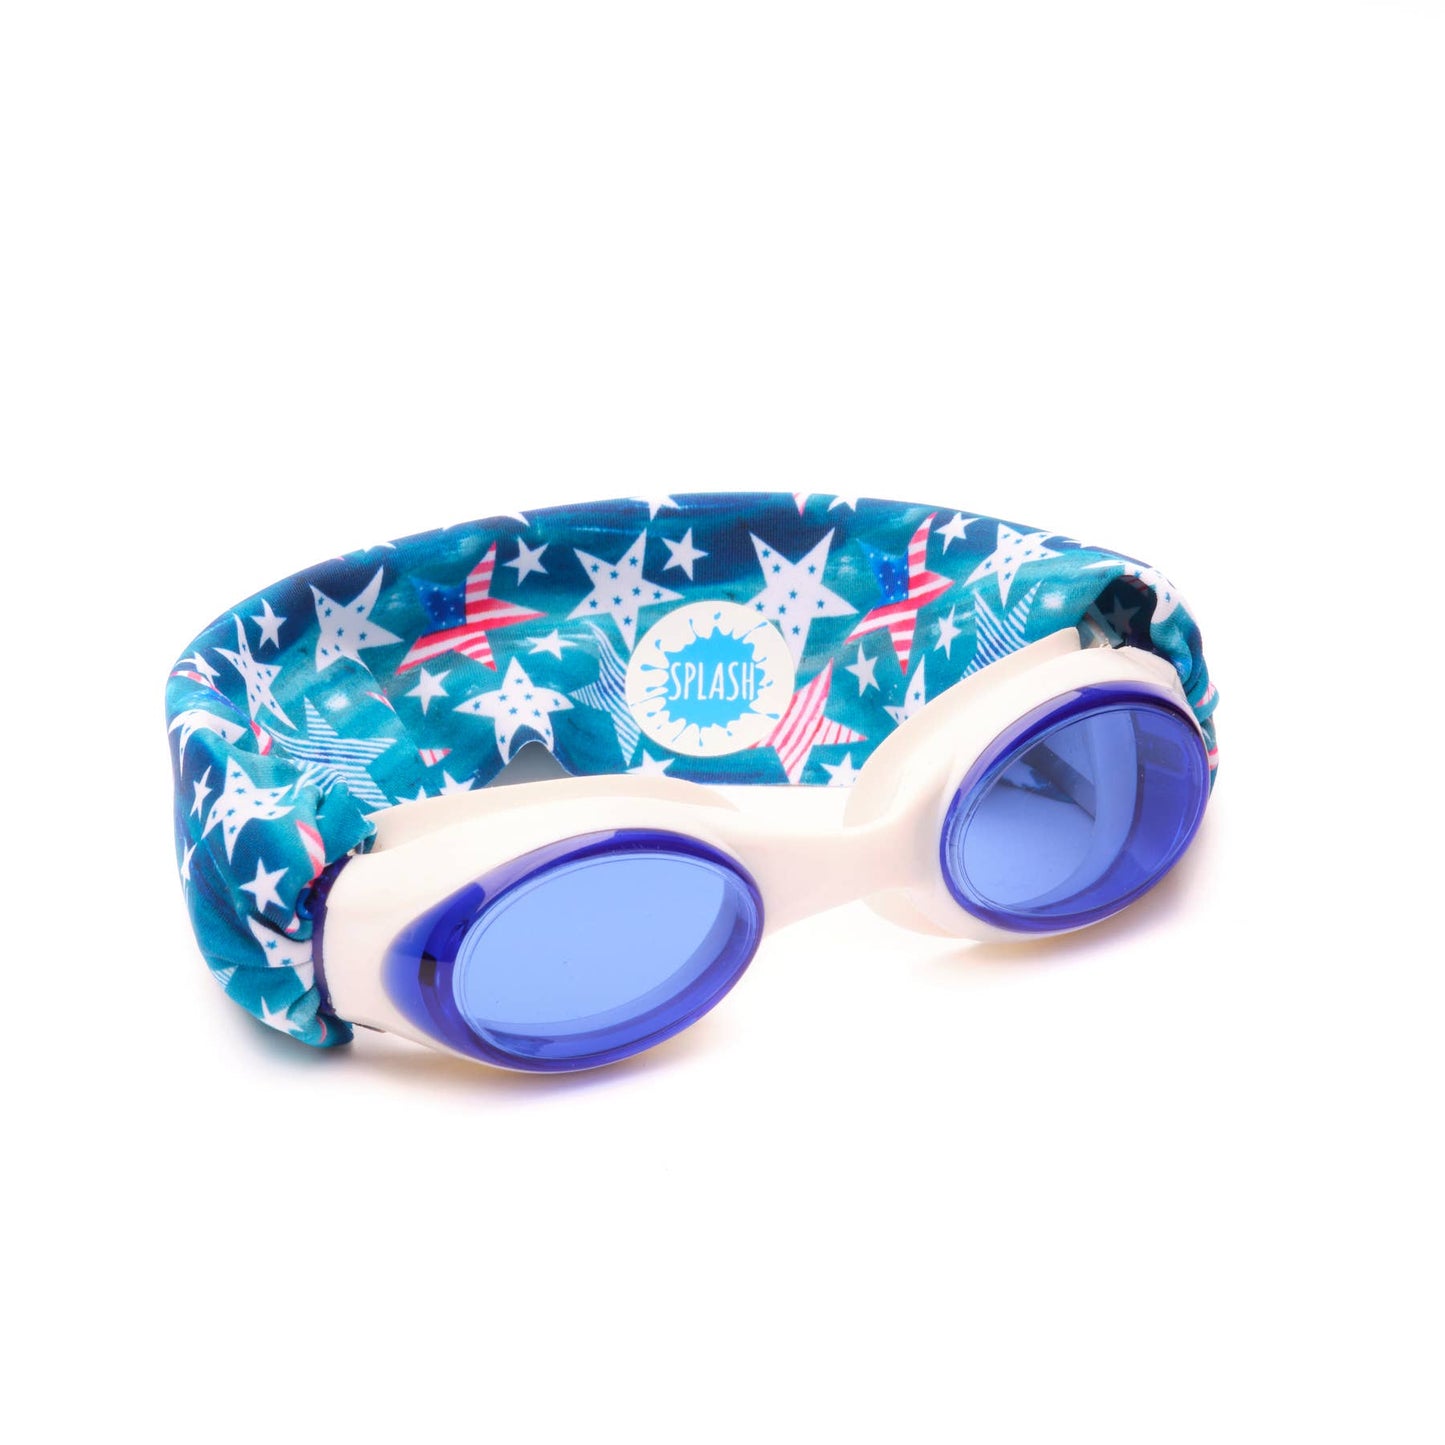 Splash Swim Goggles - 'Merica Swim Goggles